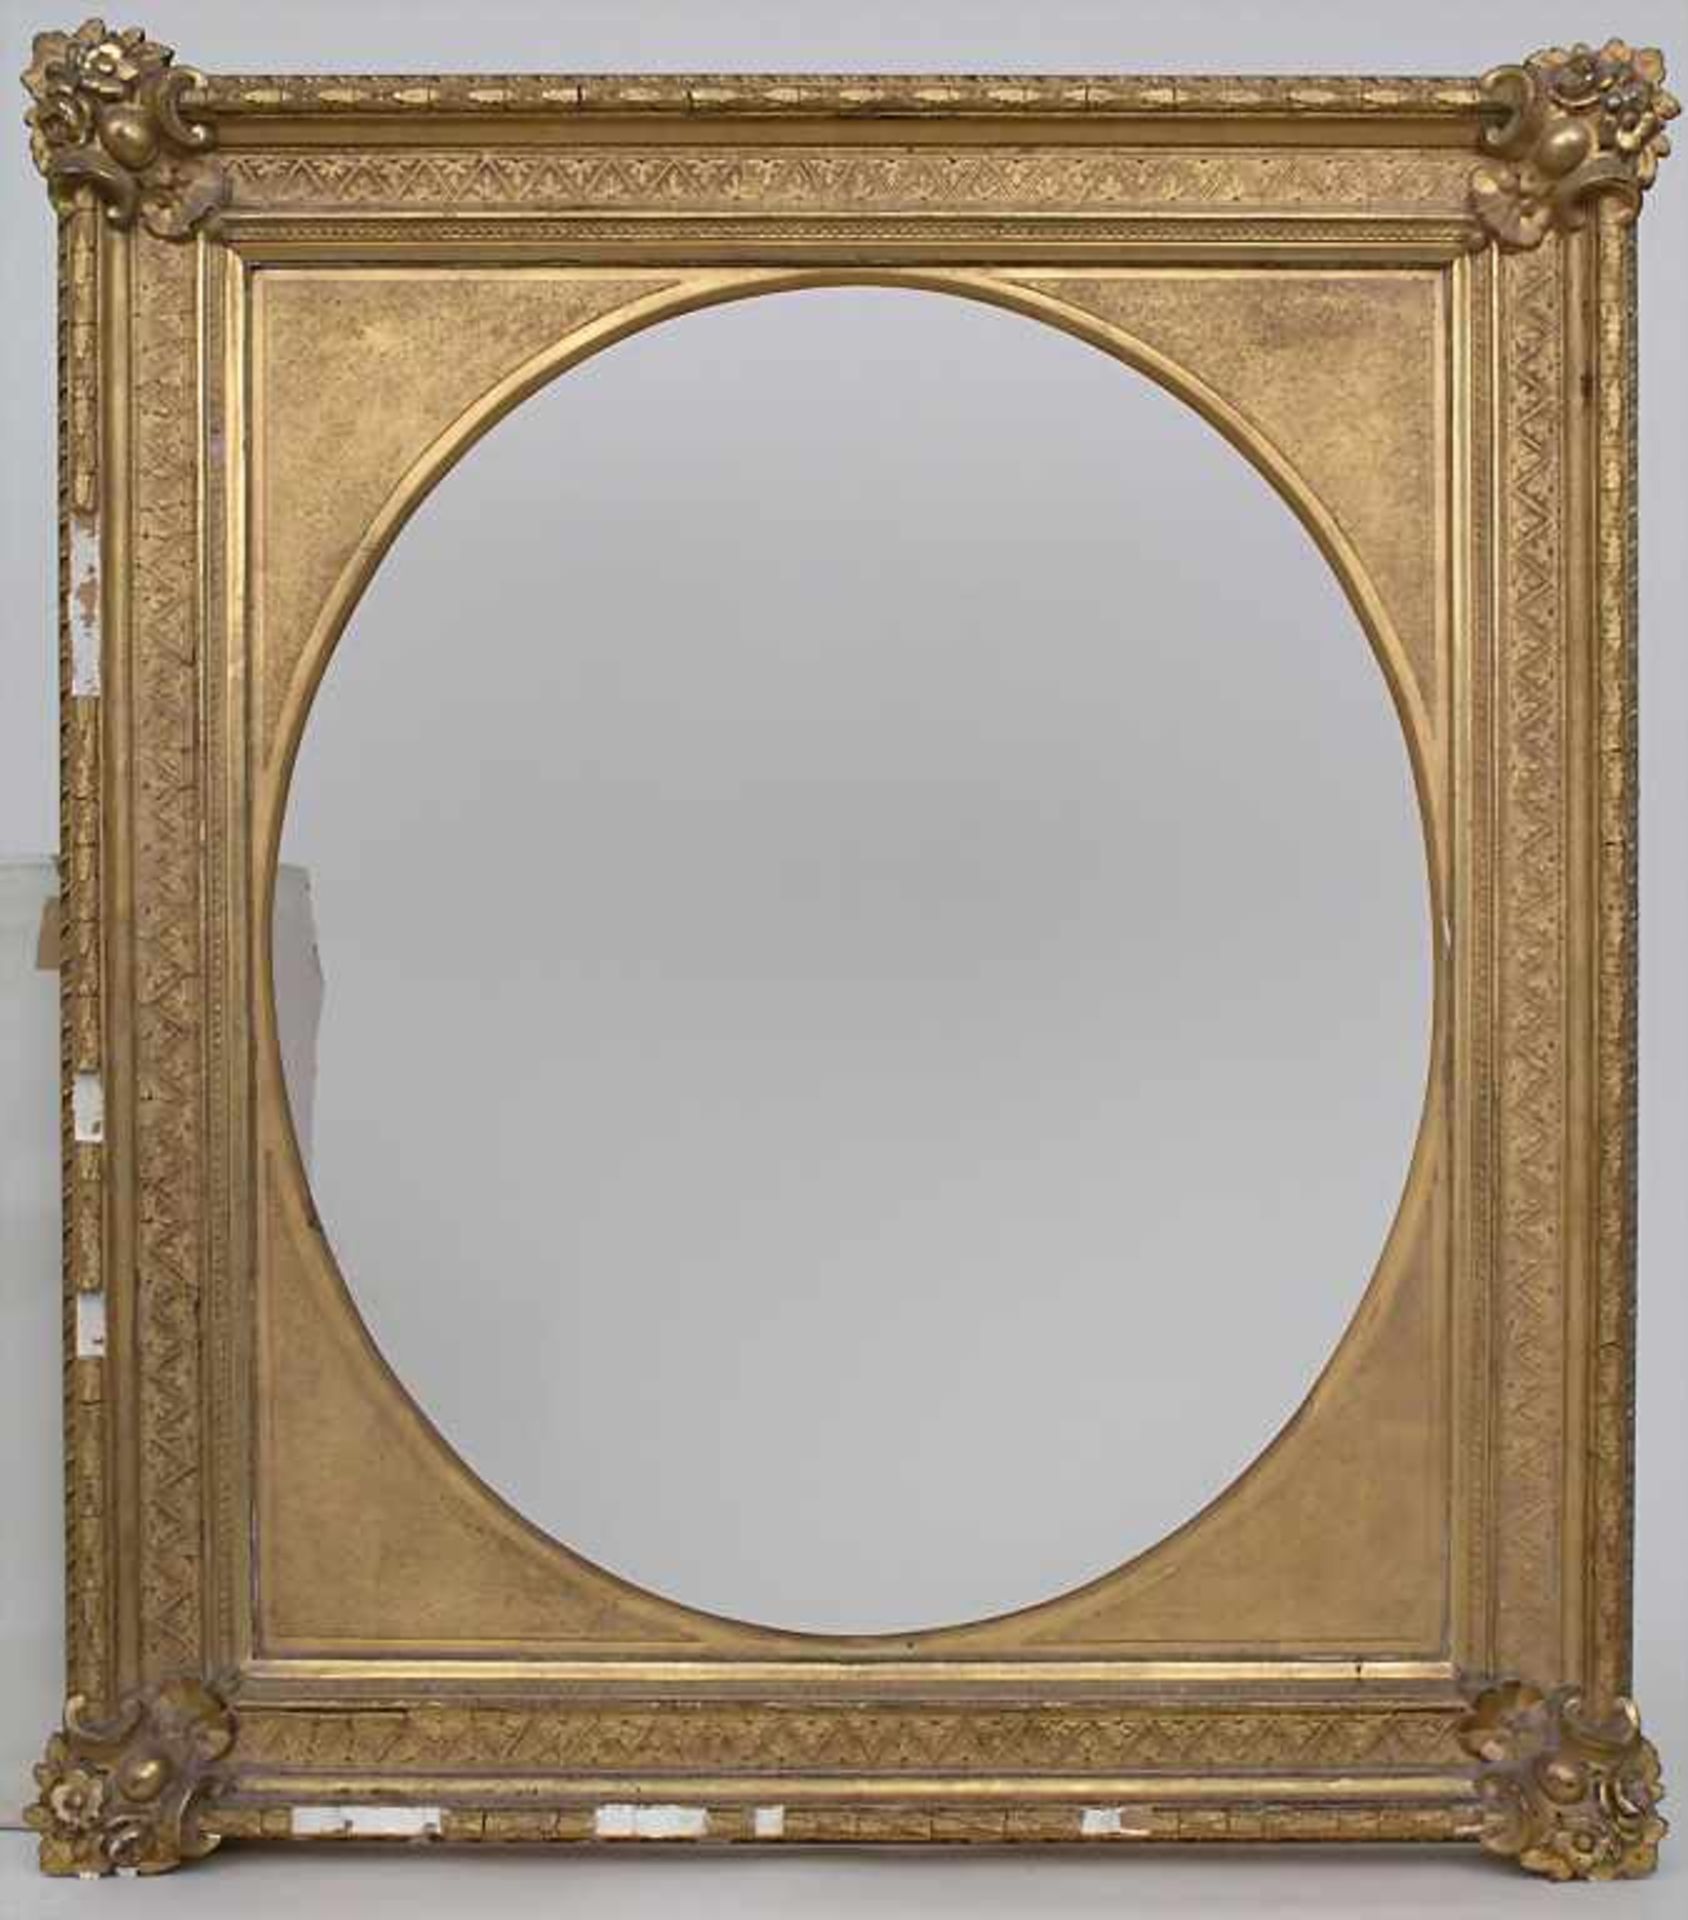 Klassizistischer Rahmen / A classicist frame, Anfang 19. Jh.Material: Holz, stuckiert, vergoldet,